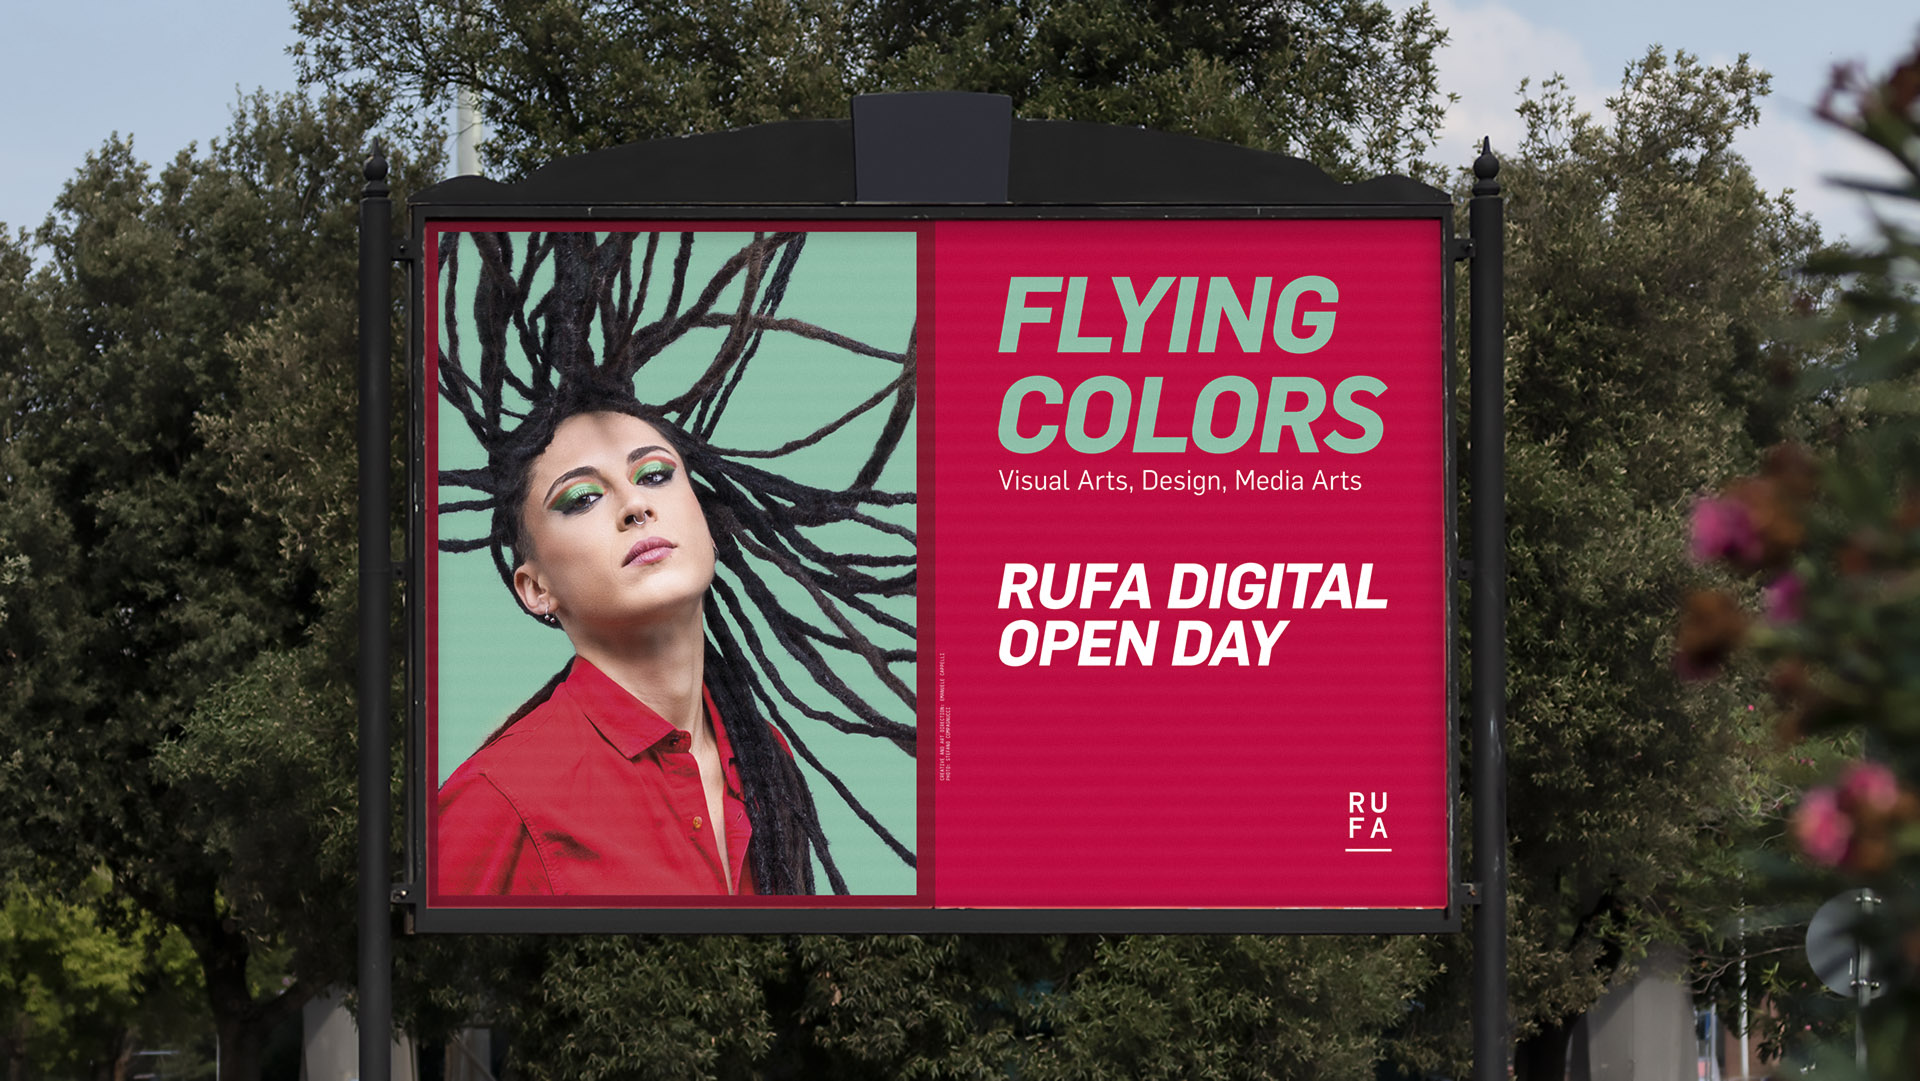 FLYING COLORS - RUFA